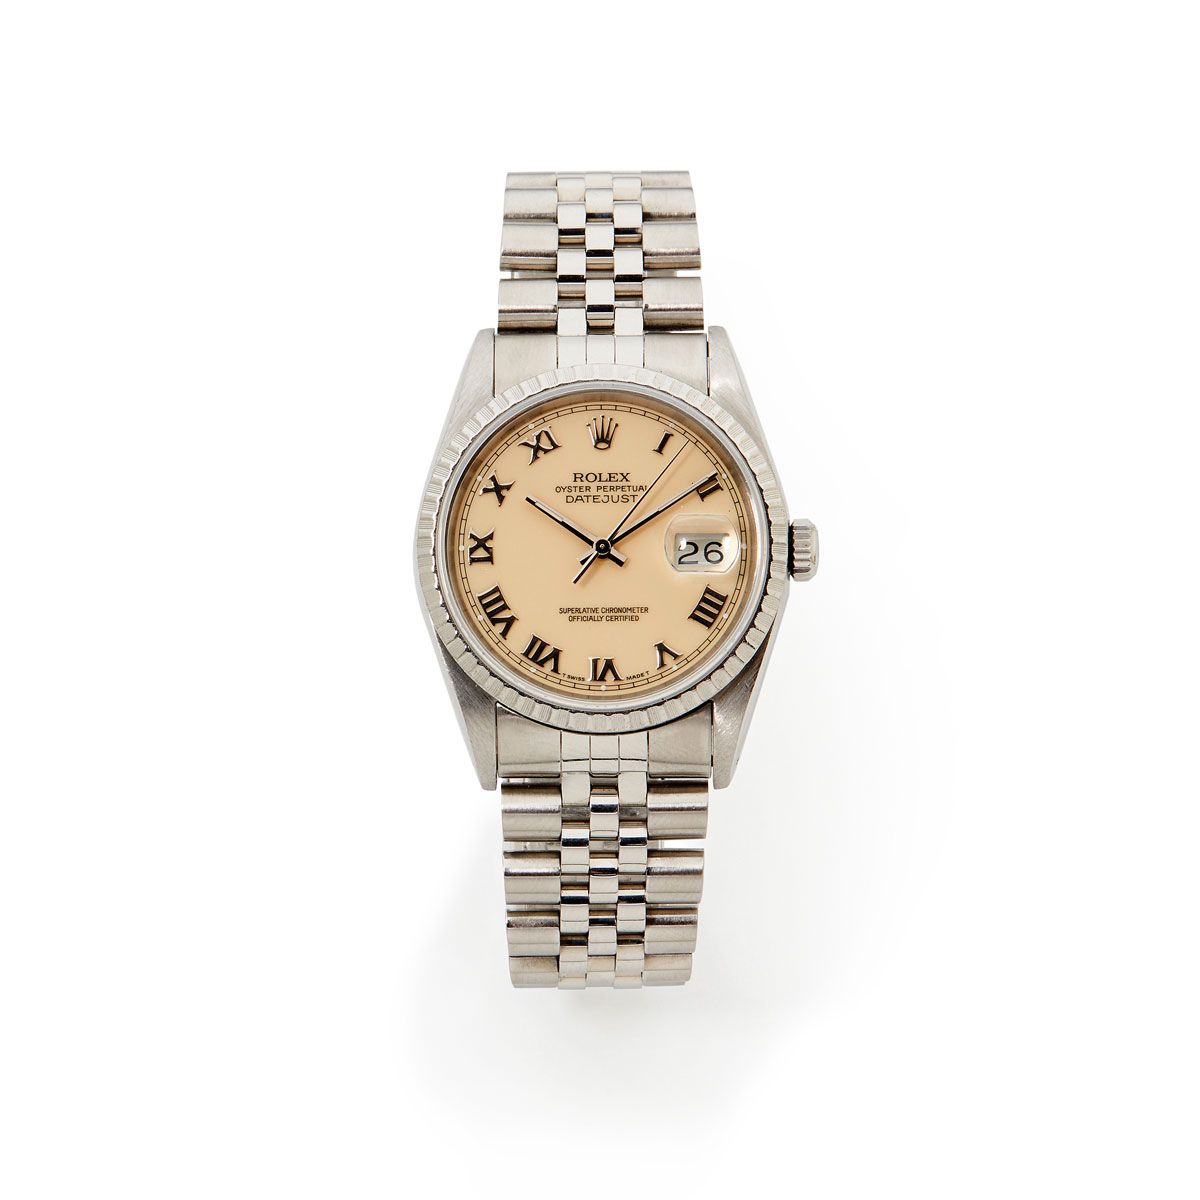 Null Rolex, Datejust, Réf. 16220, n° X72xxxxx, vers 1991.

Une très belle montre&hellip;